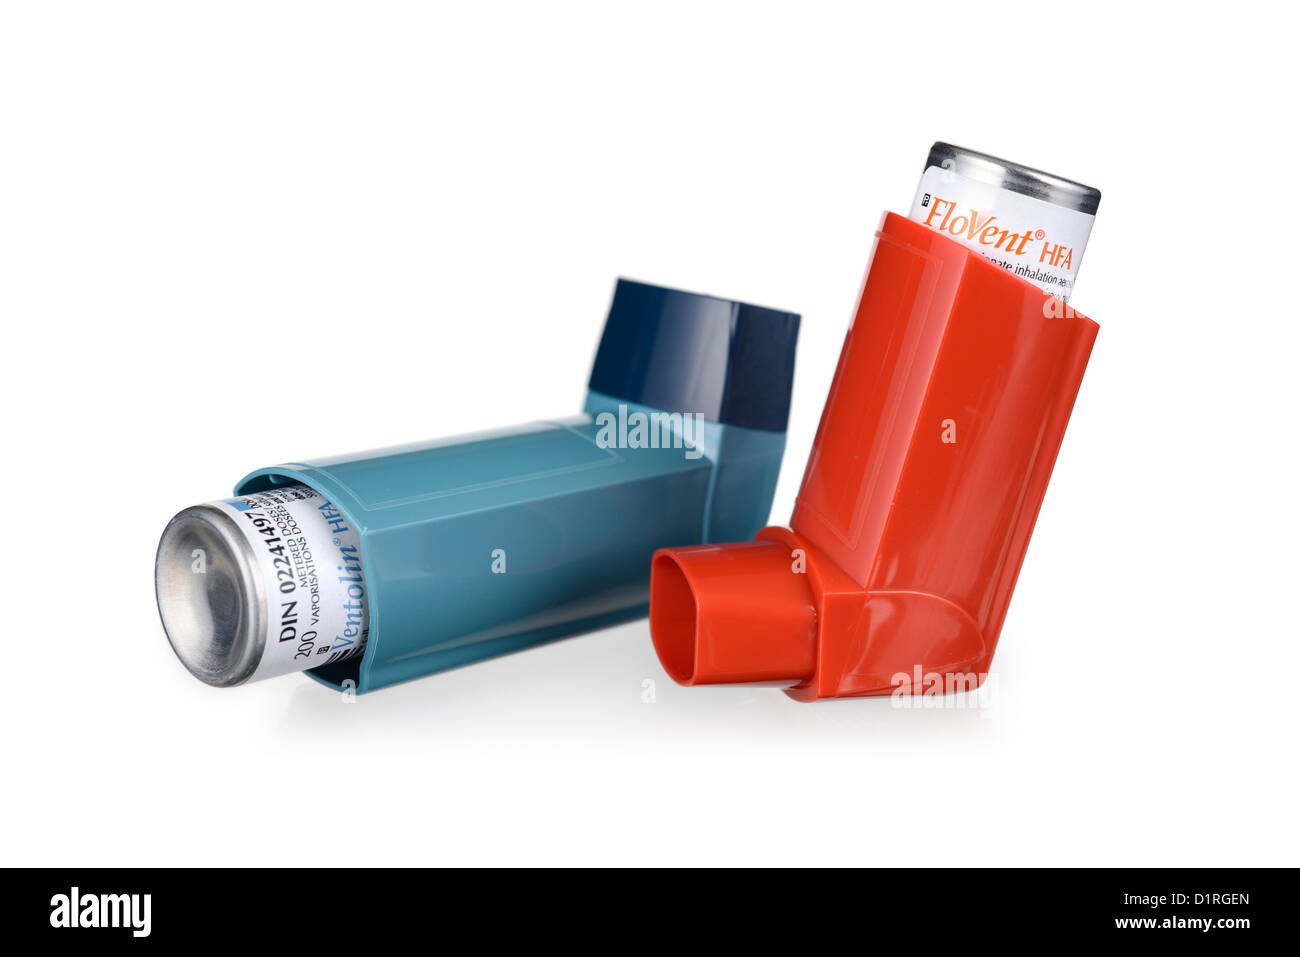 Salbutamol inhalers Banque de photographies et d'images à haute résolution  - Alamy